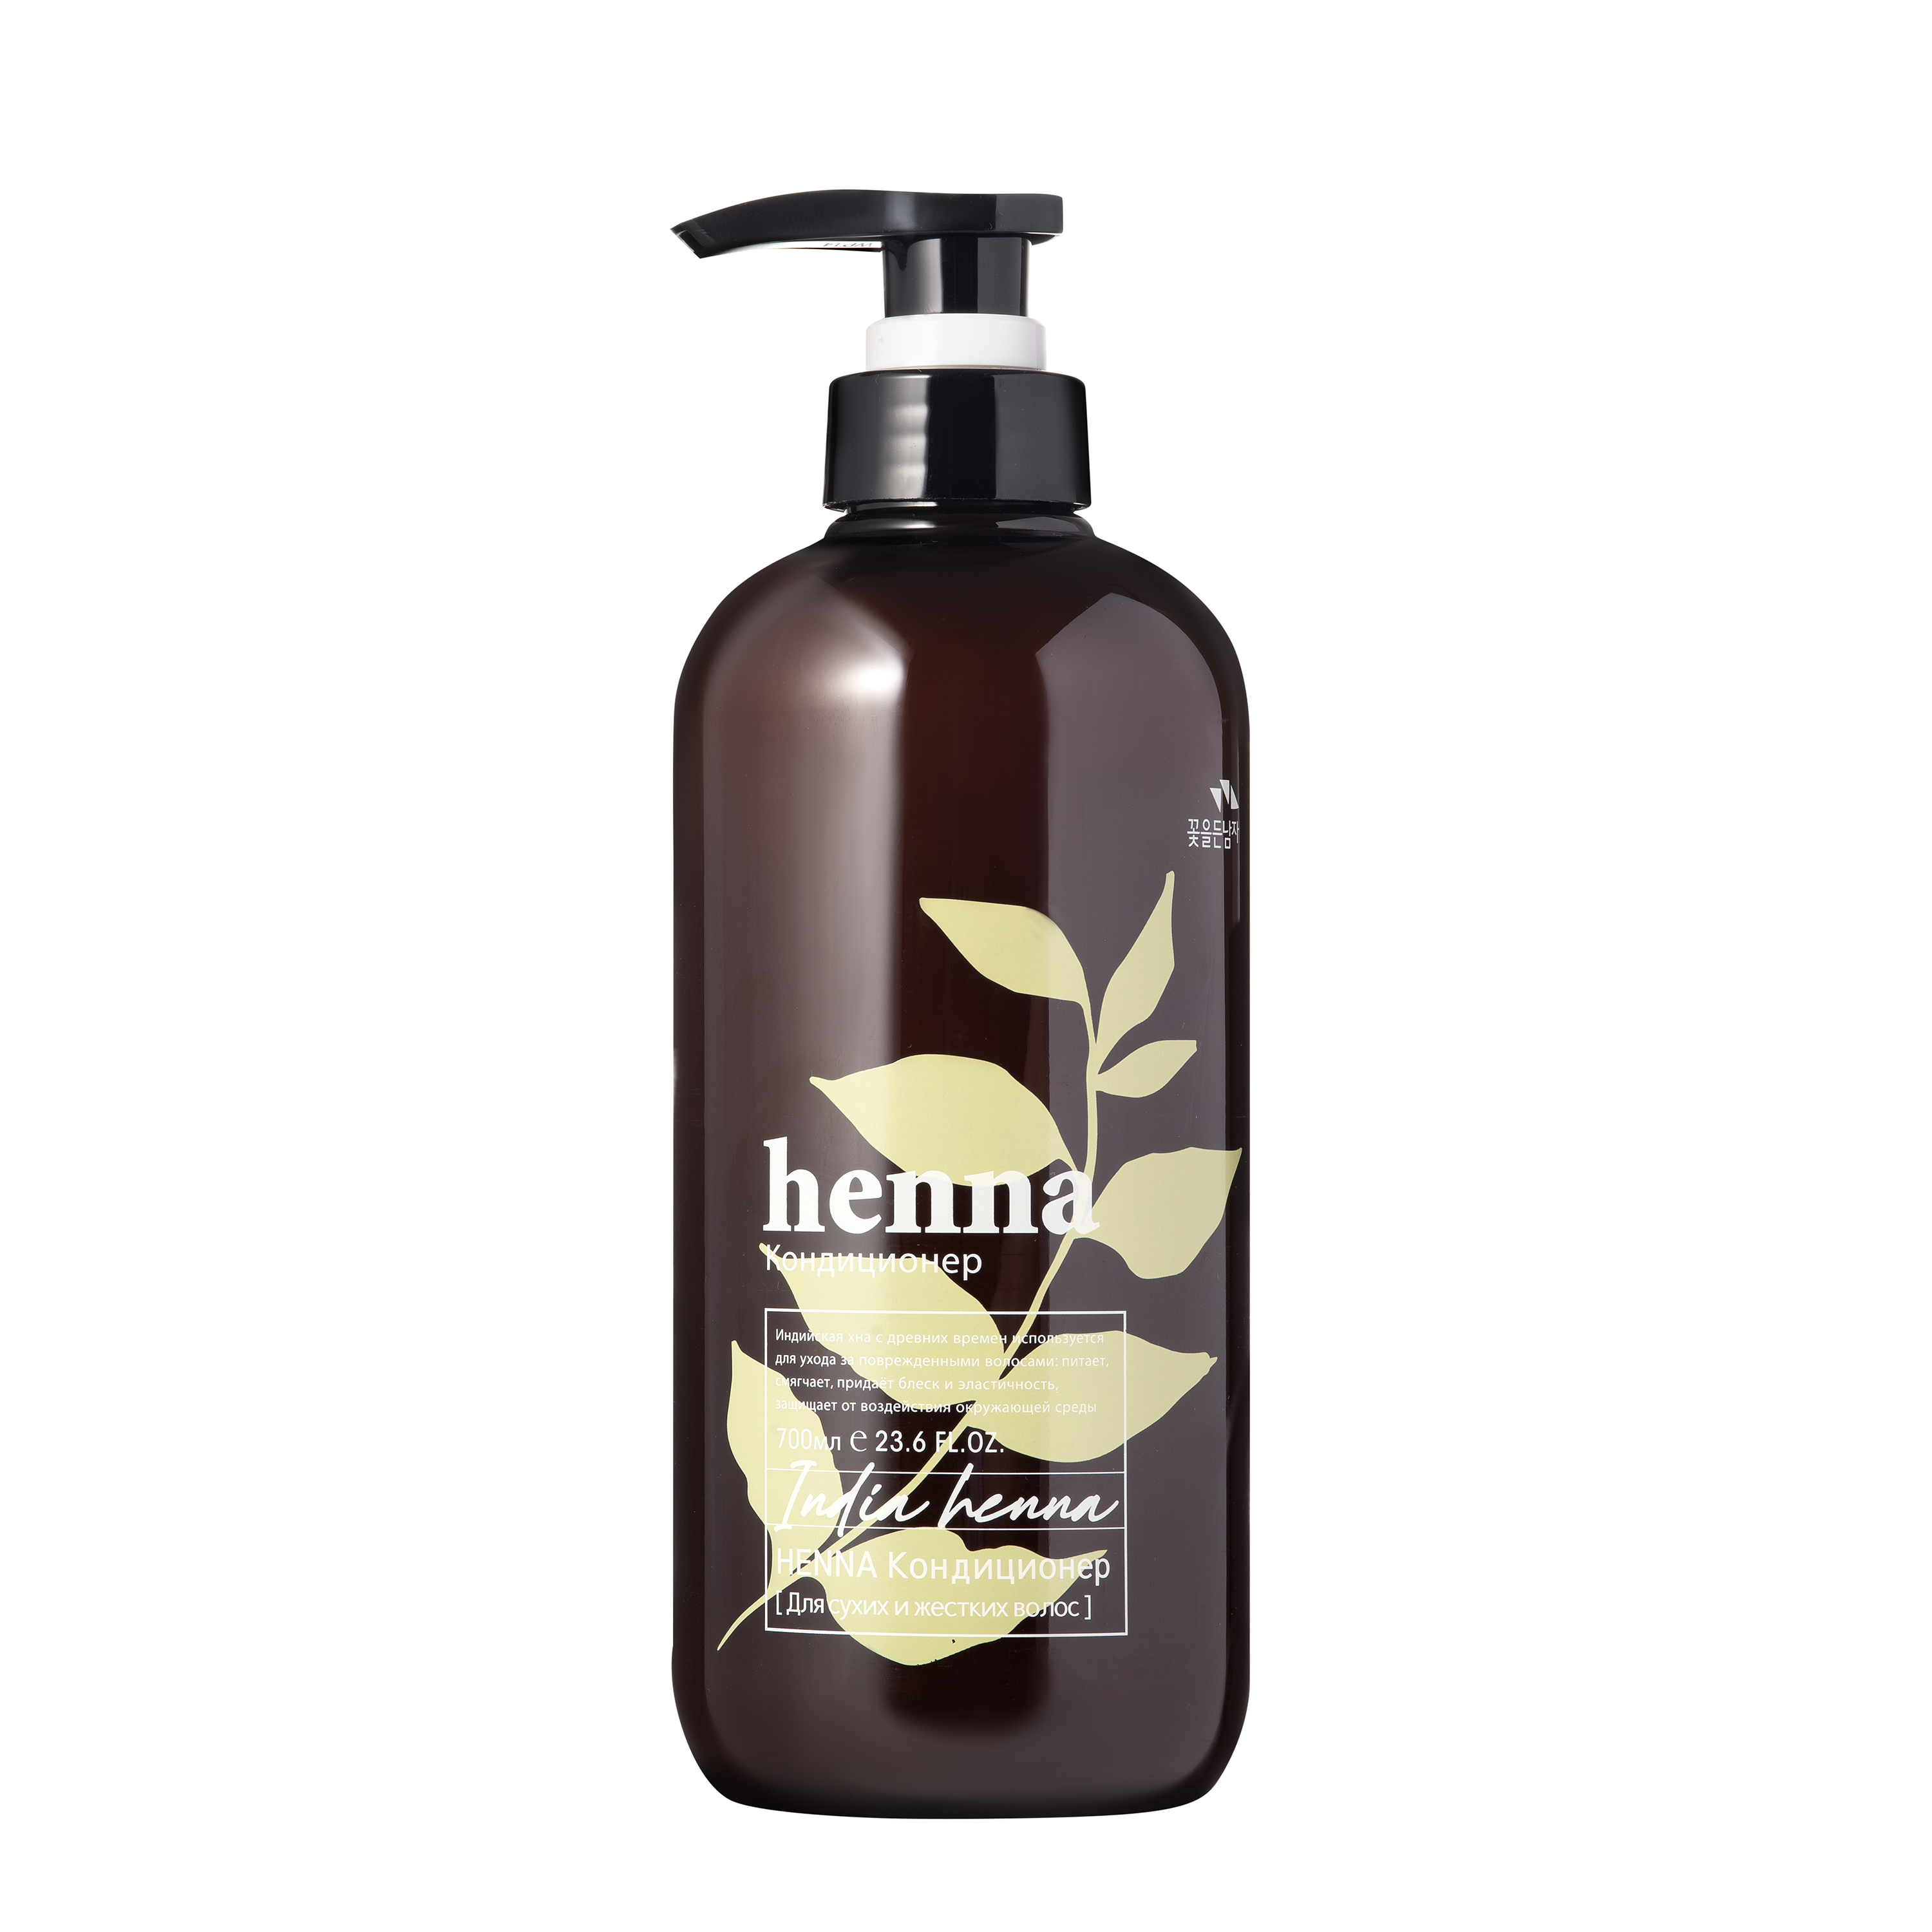 Кондиционер Flor de Man для волос Henna Hair Rinse, 700 мл zeitun шампунь для тонких и хрупких волос с иранской хной эффект ламинирования lamination effect